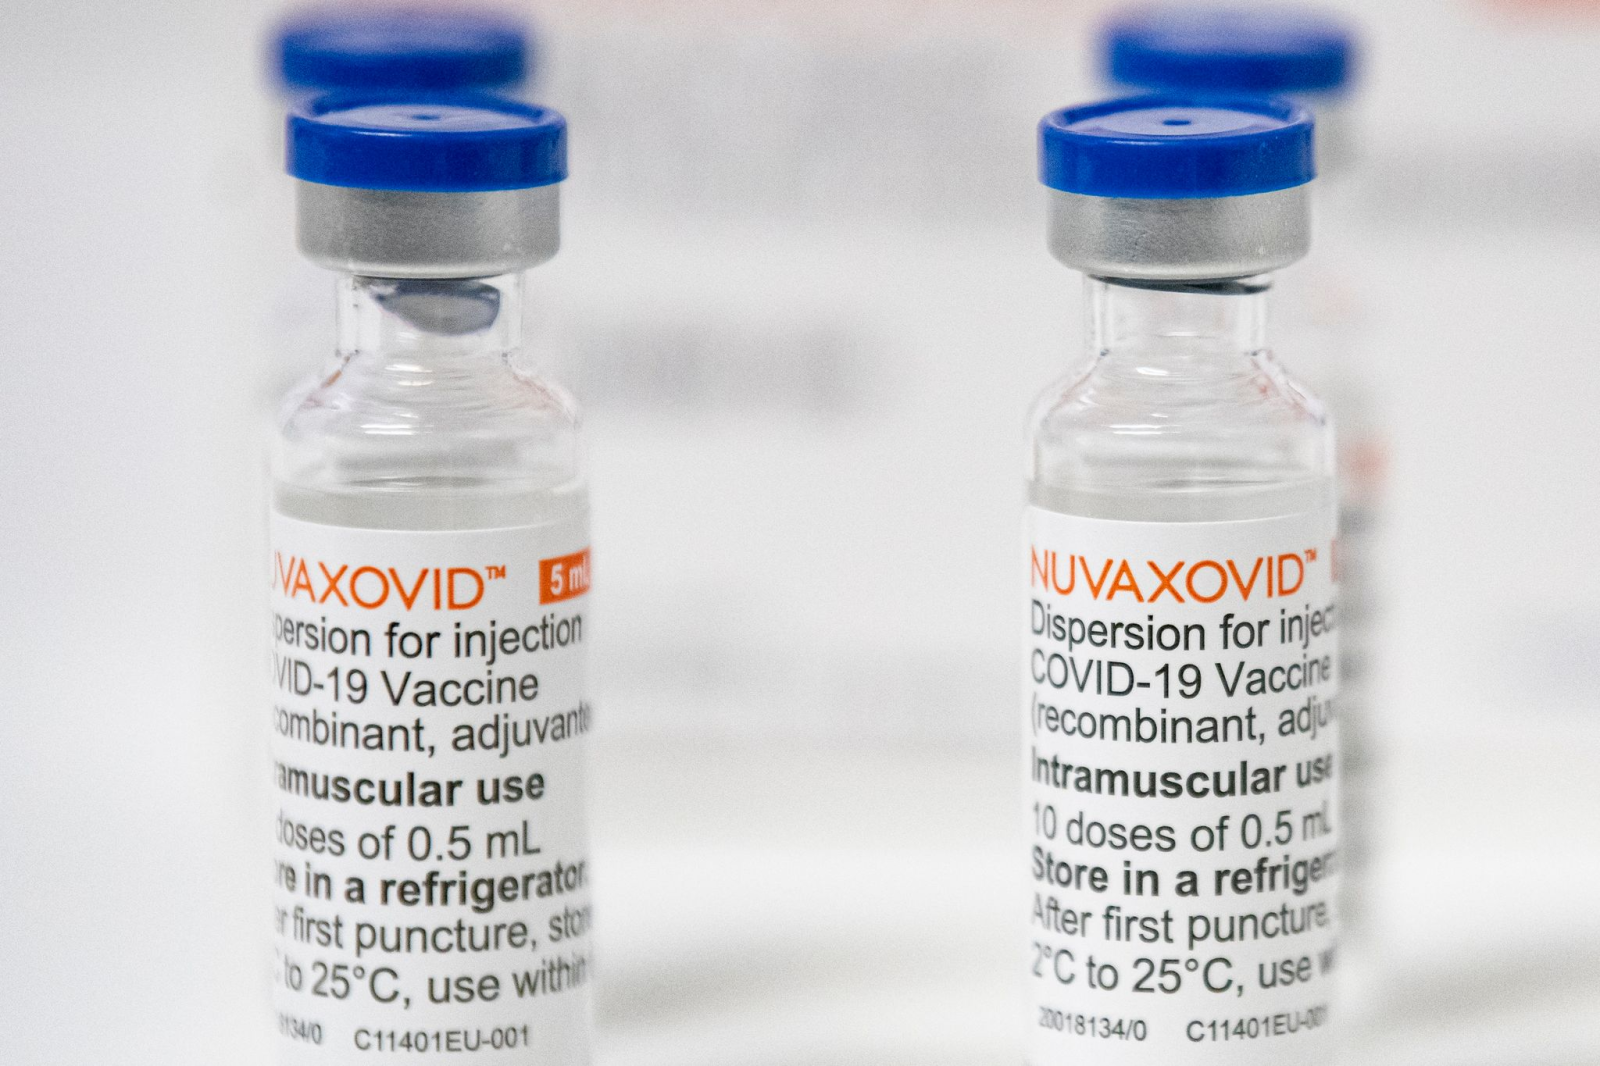 Ampullen mit dem Corona-Impfstoff Nuvaxovid stehen in einem Corona-Impfzentrum auf dem Tisch.